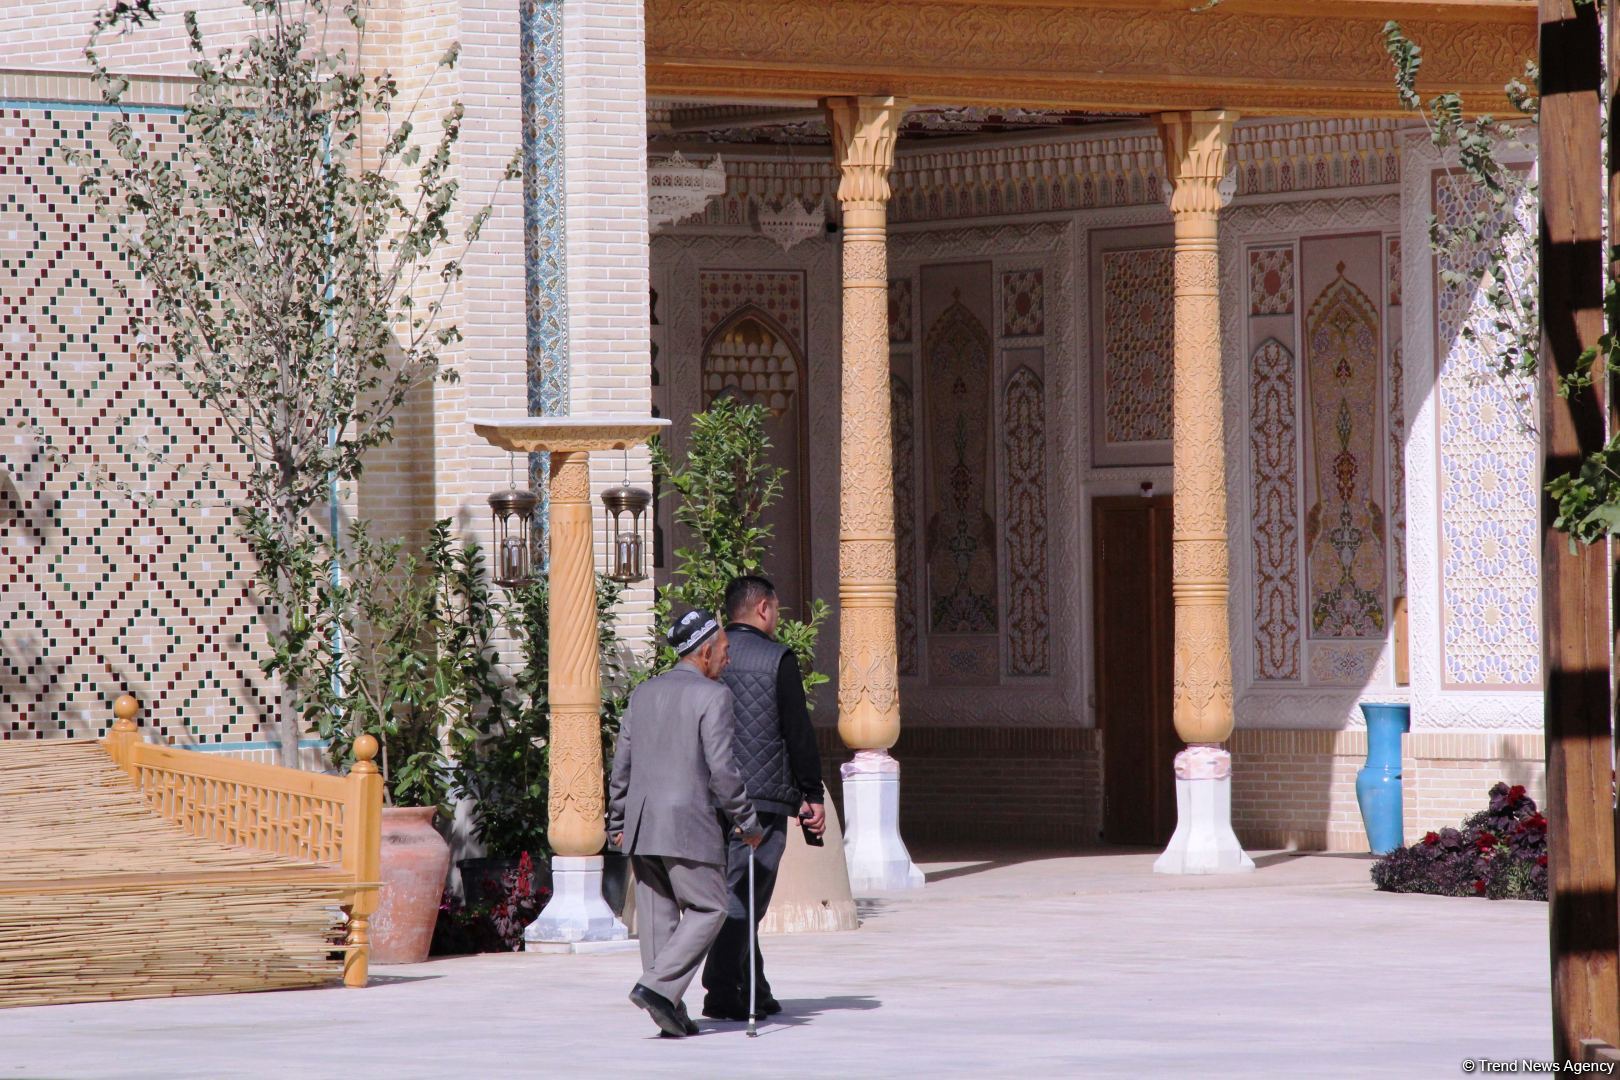 Путешествие в Самарканд – красочный Узбекистан в одном "Вечном городе" и дурманящие ароматы  древнего Сиабского базара (ВИДЕО, ФОТО, часть 1)